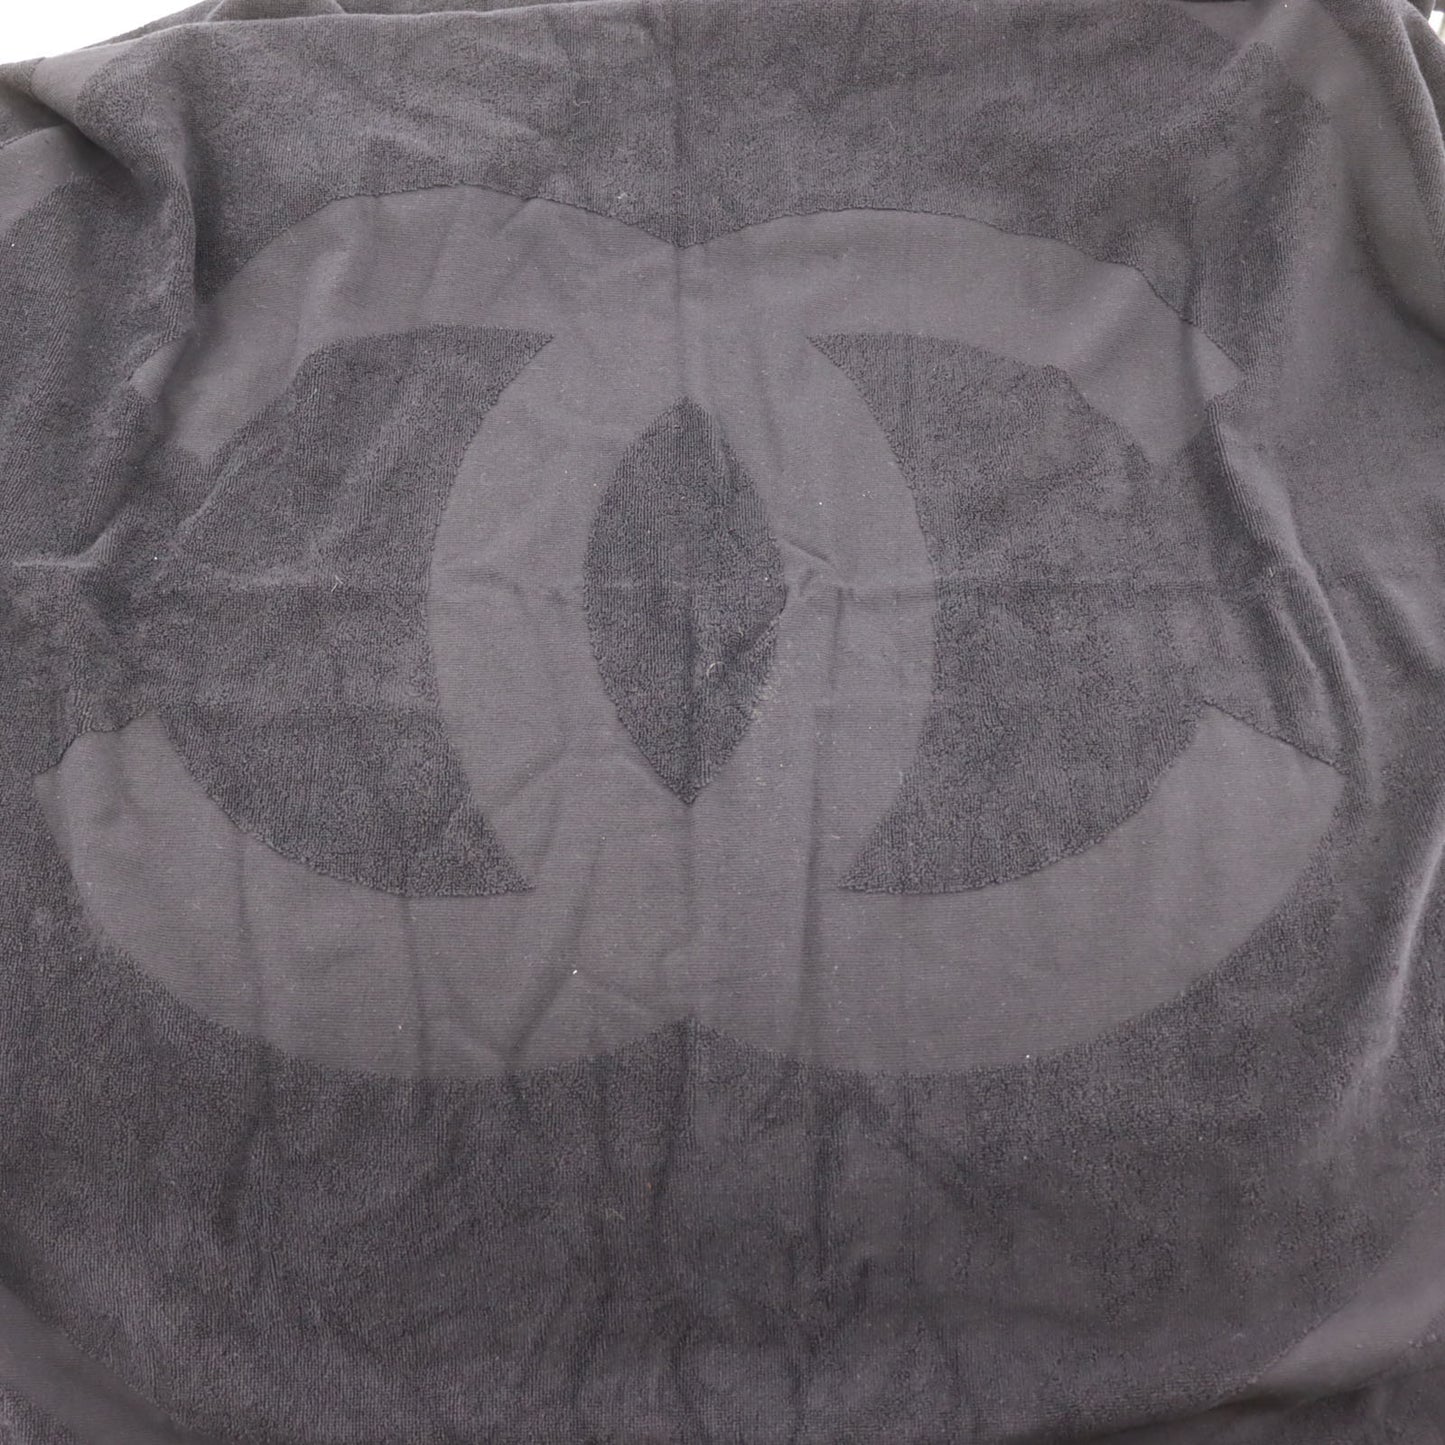 CHANEL CC Logos Large Beach Towel 100% Cotton Pile Black #BX905